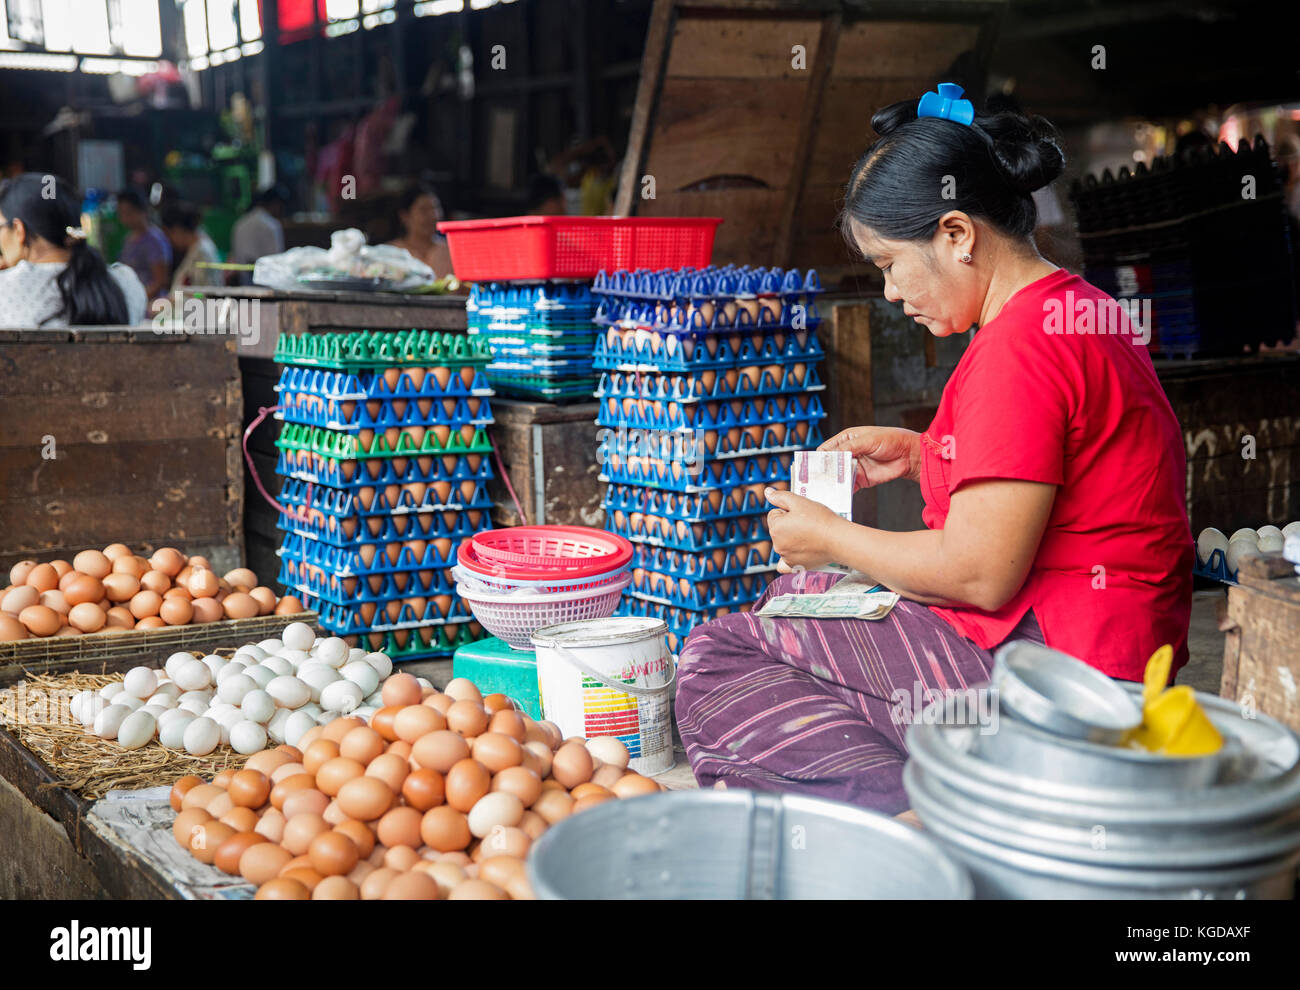 Femme birmane la vente des oeufs et de l'argent comptant au marché alimentaire à Yangon / Myanmar / Birmanie, Rangoon Banque D'Images